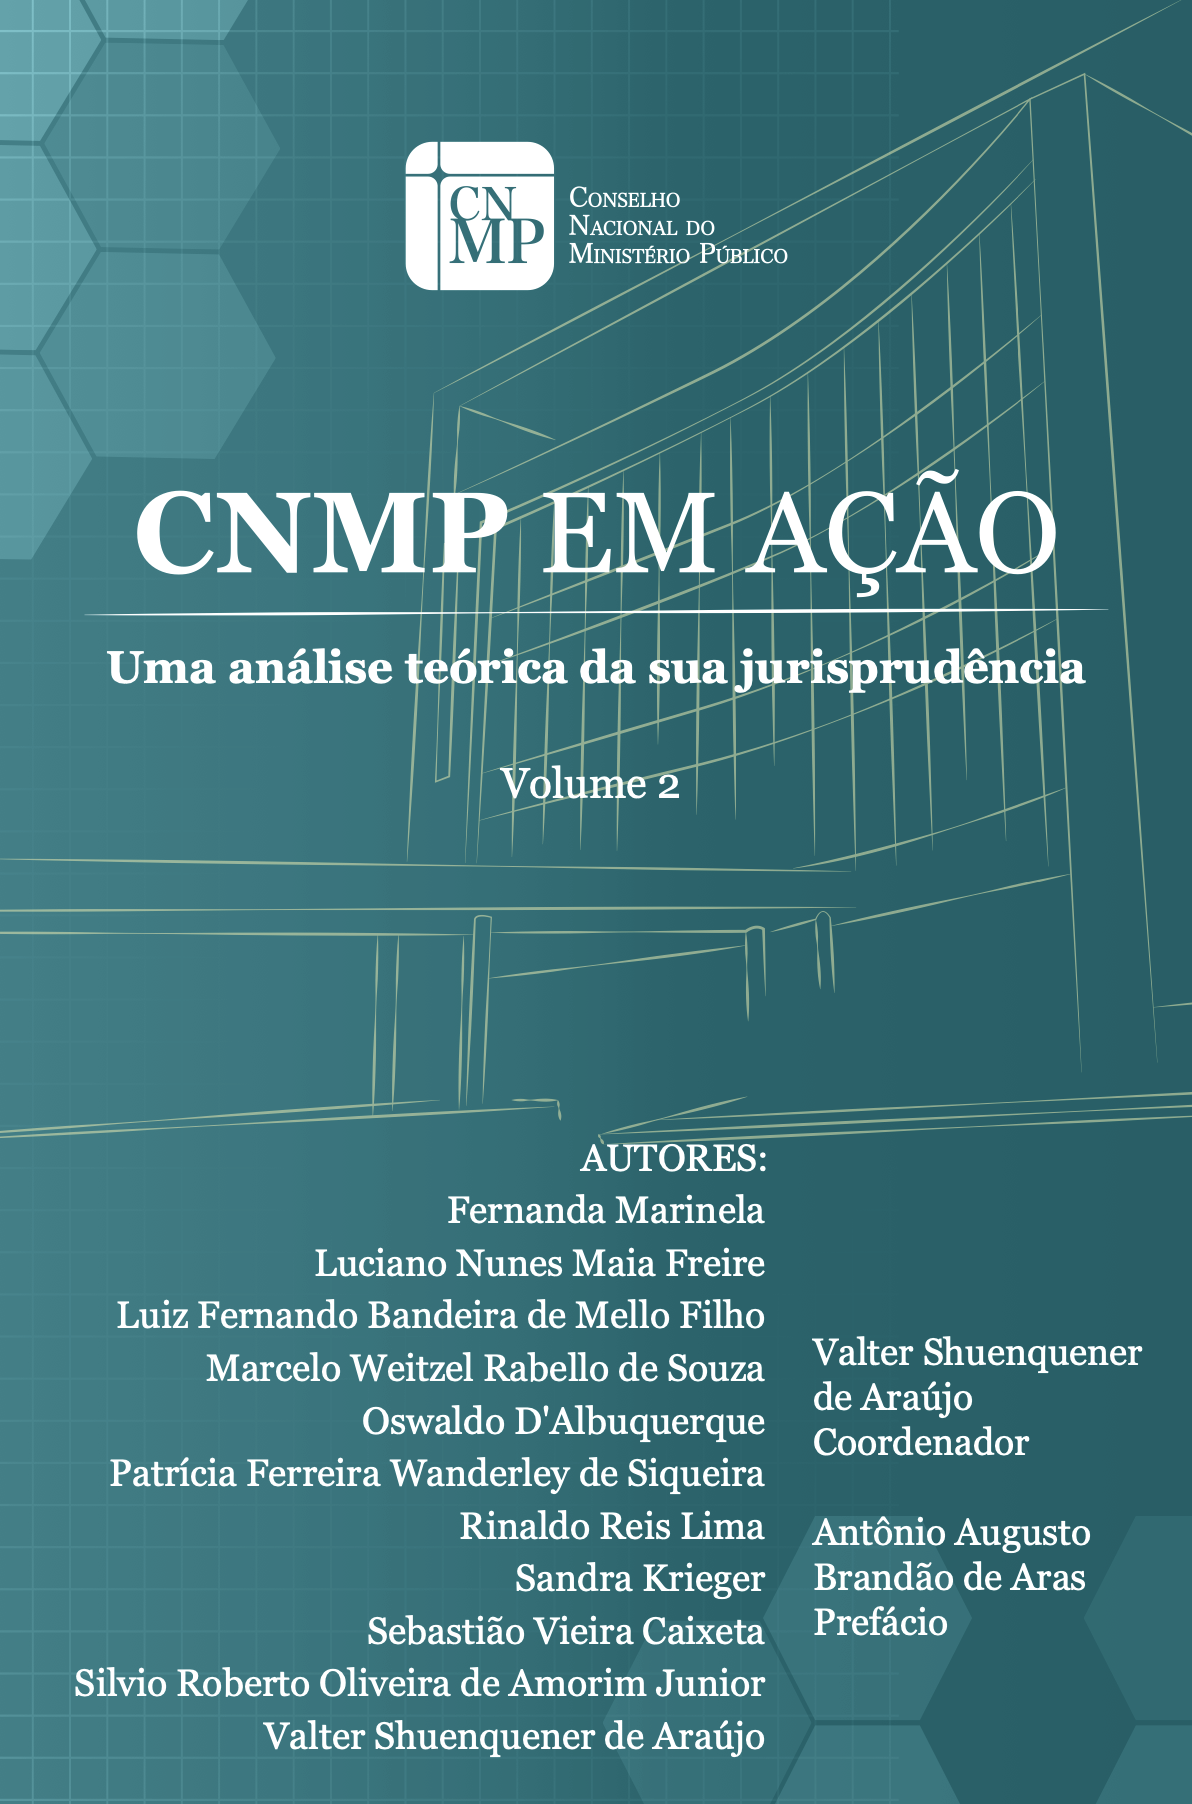 CNMP em Ação - Uma análise teórica da sua jurisprudência - Volume 2